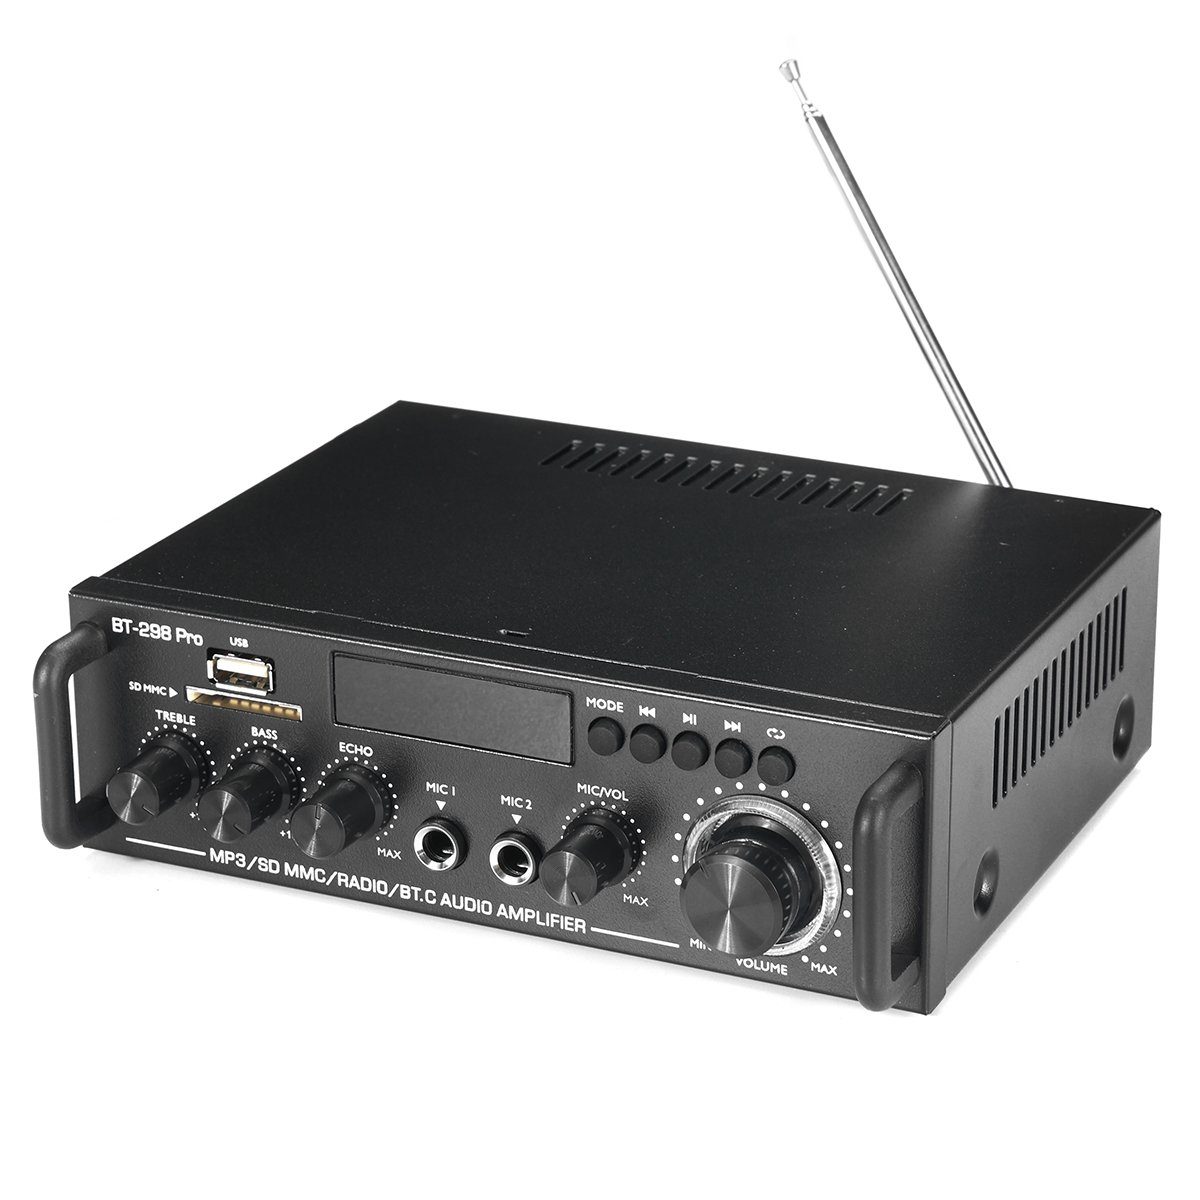 Insma Audioverstärker (2-Kanal bluetooth Verstärker Amplifier) 800W Digital HiFi Stereo Audio